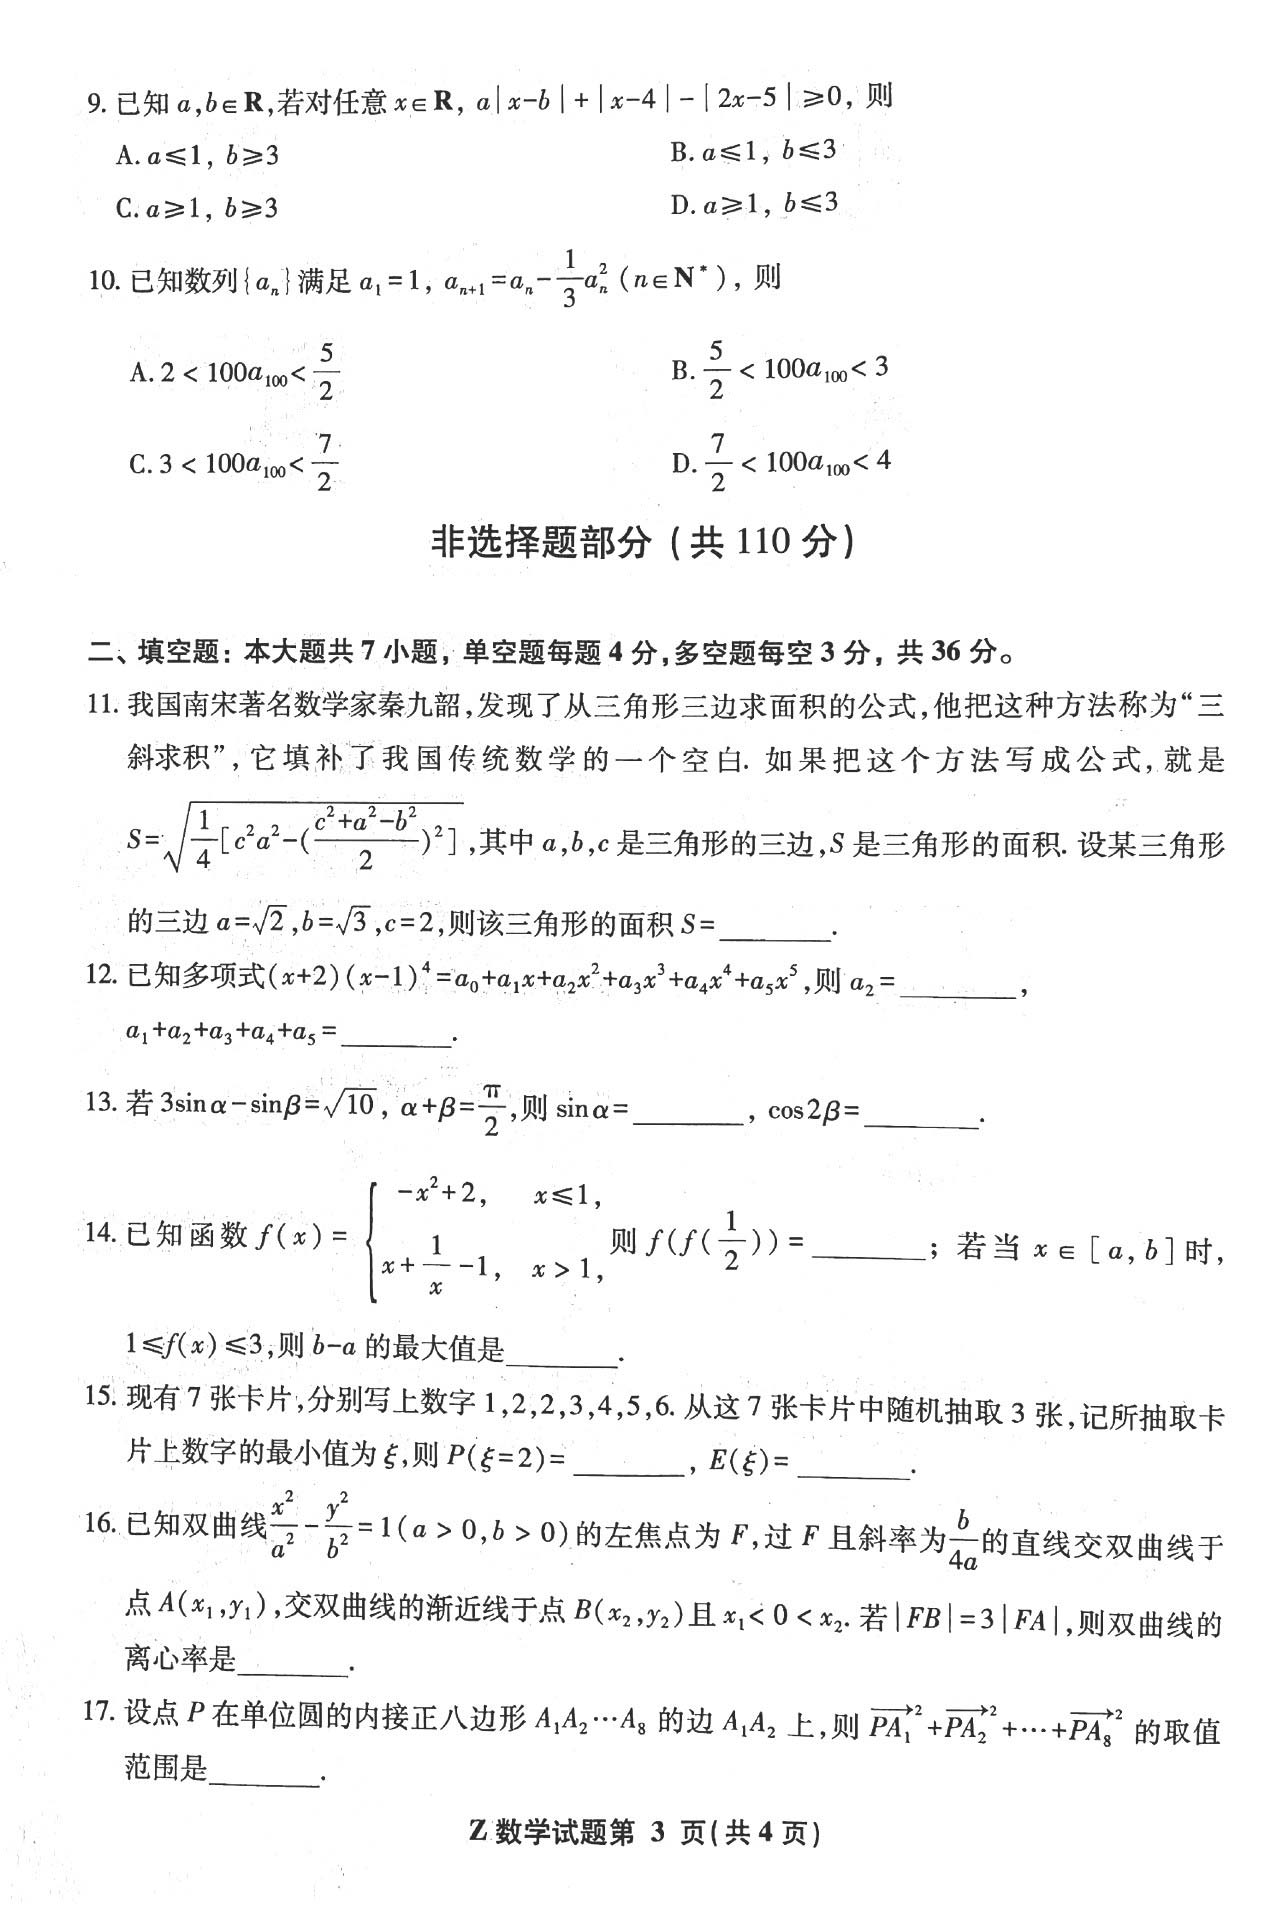 2022年浙江高考数学真题及答案已公布(完整版)